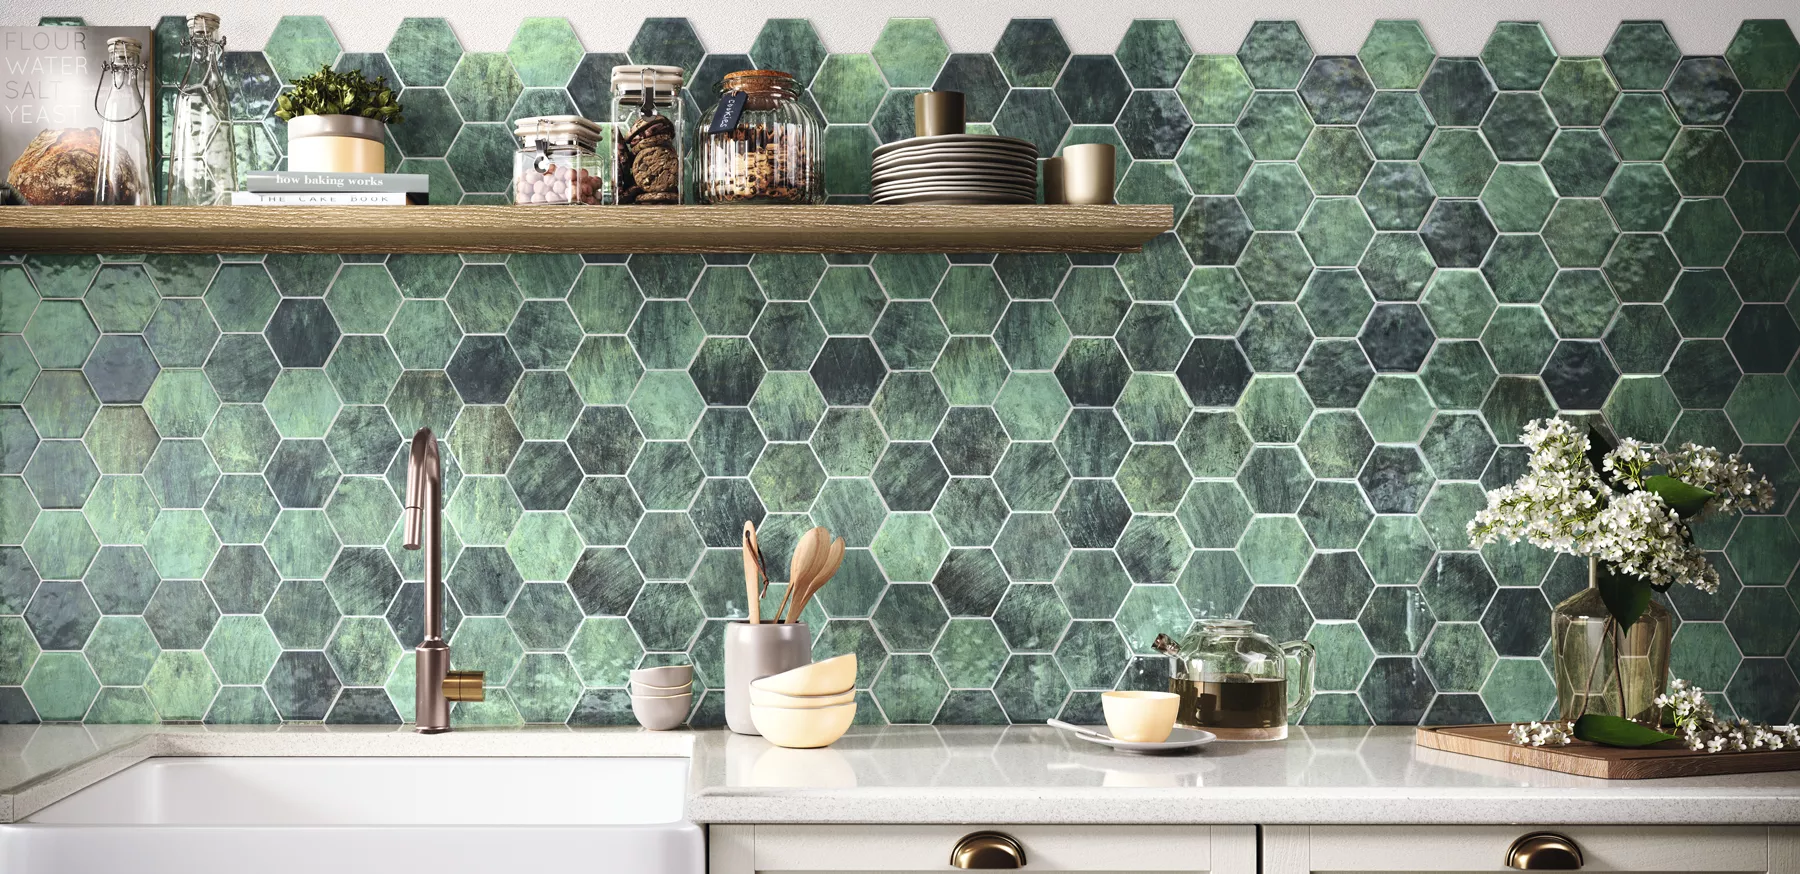 Ściana w kuchni wyłożona zielonymi płytkami w kształcie heksagonu z jasnymi meblami, wiszącą półką drewnianą, naczyniami i kwiatami w wazonie